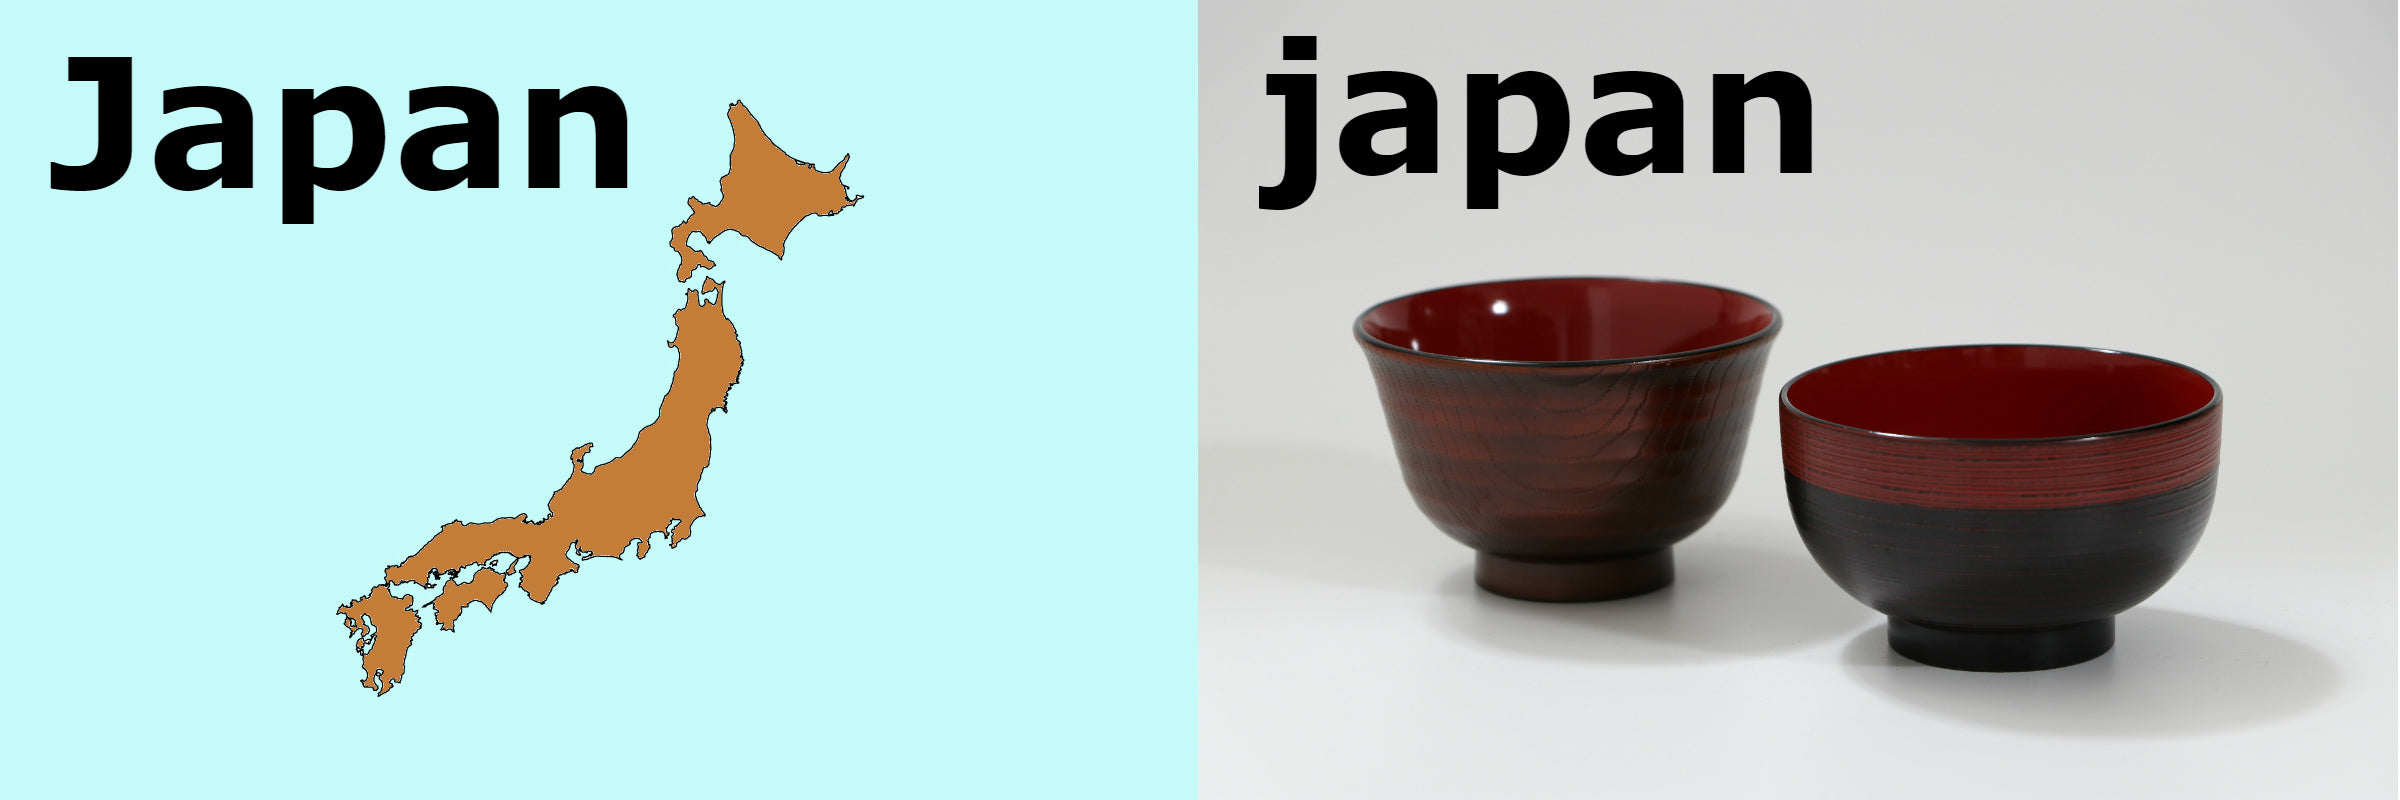 Japan vs japan